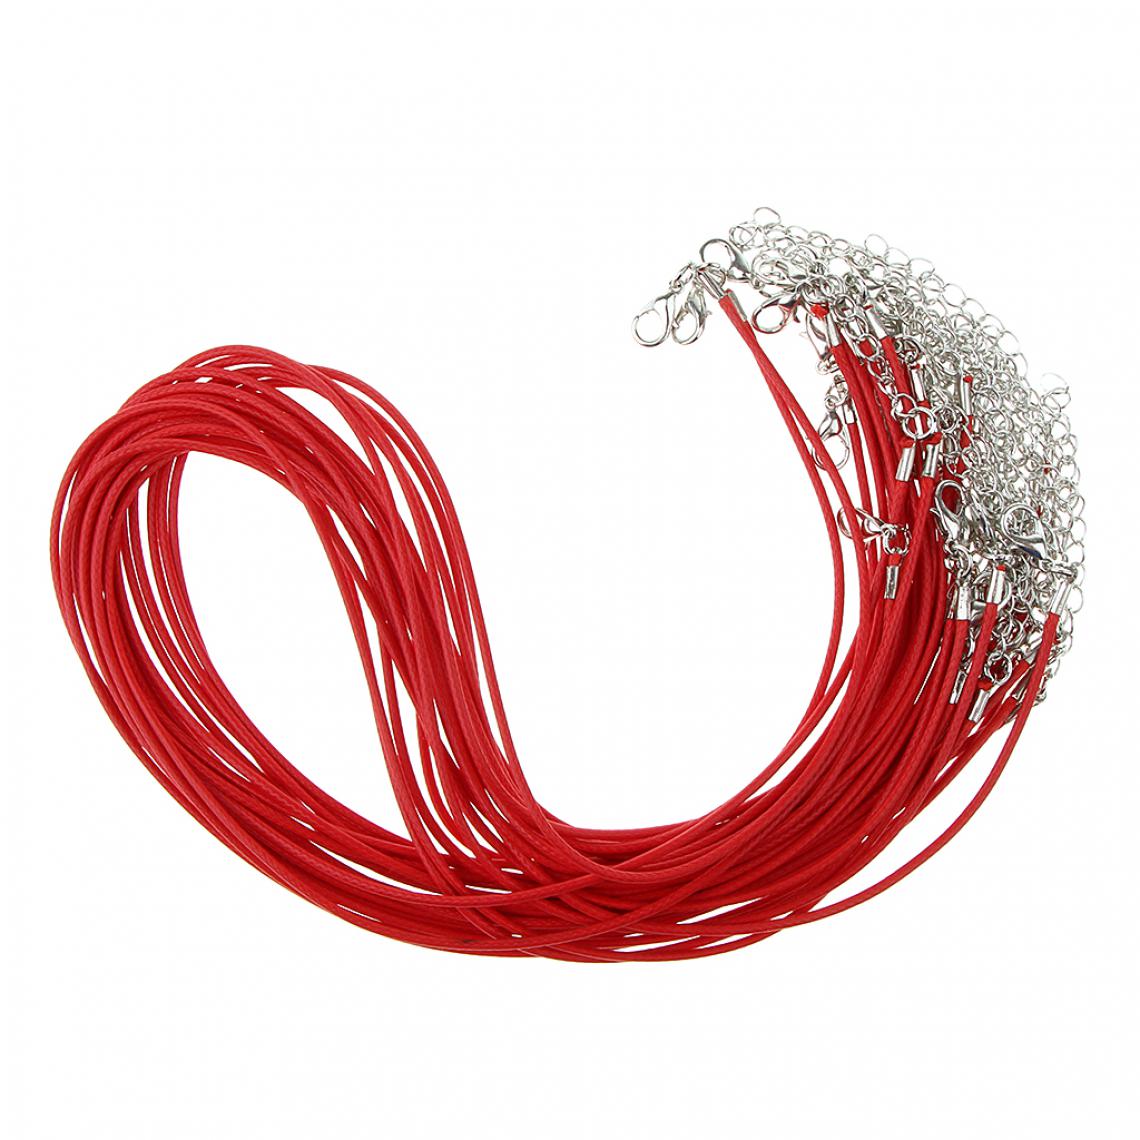 marque generique - 20 pièces bricolage collier fait main cordon cire corde corde fabrication de bijoux vin rouge - Perles